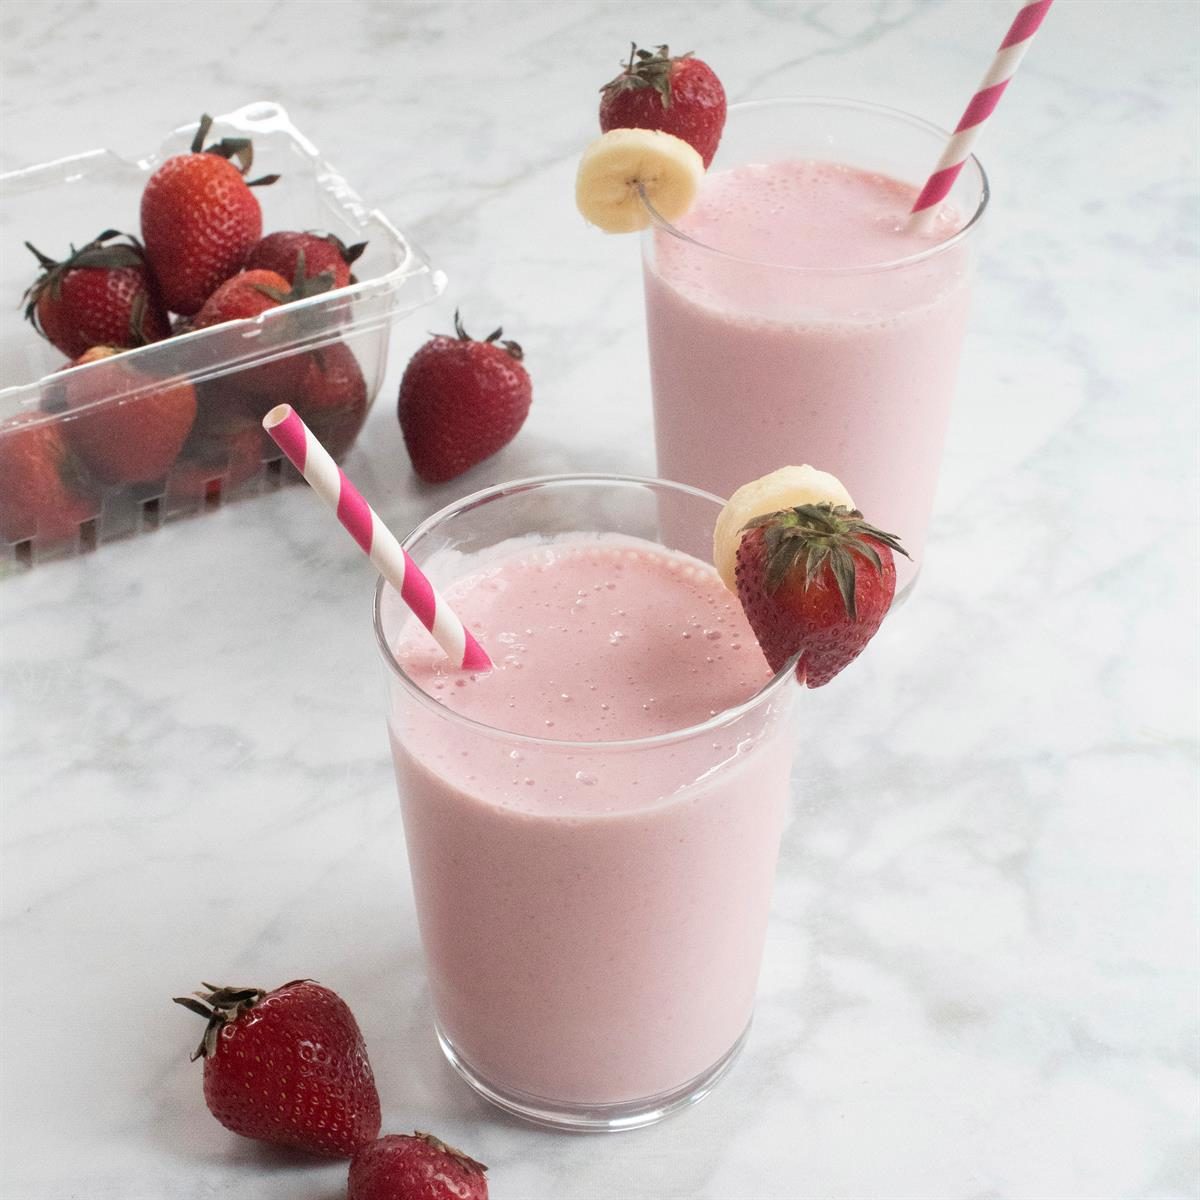 Strawberry Banana Yogurt Smoothie Recipe: How to Make It